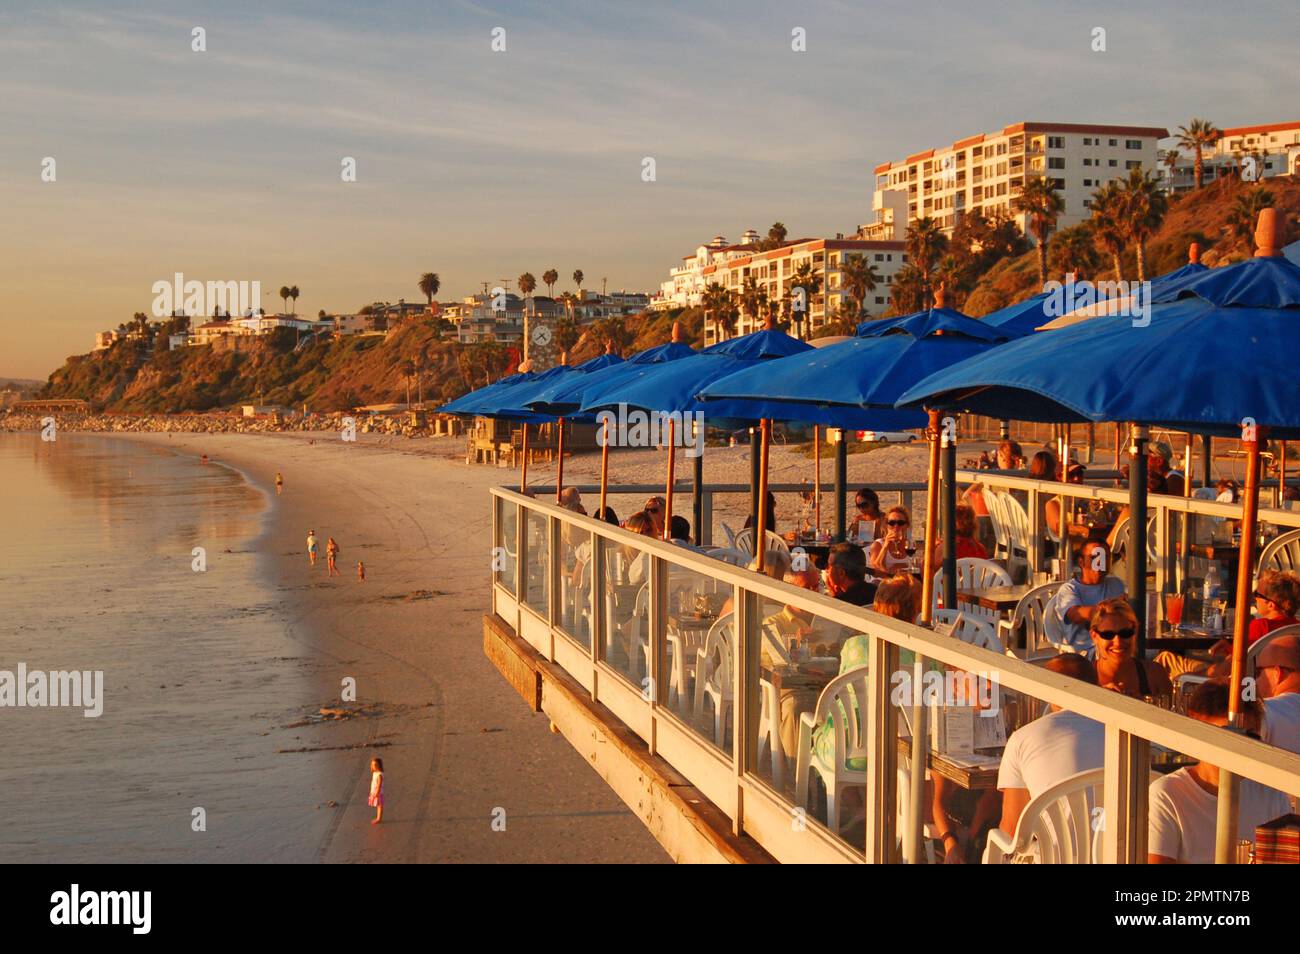 Am Pier in San Clemente, Kalifornien, gibt es zahlreiche Restaurants, von denen aus man einen tollen Blick auf den Ozean und die untergehende Sonne hat Stockfoto